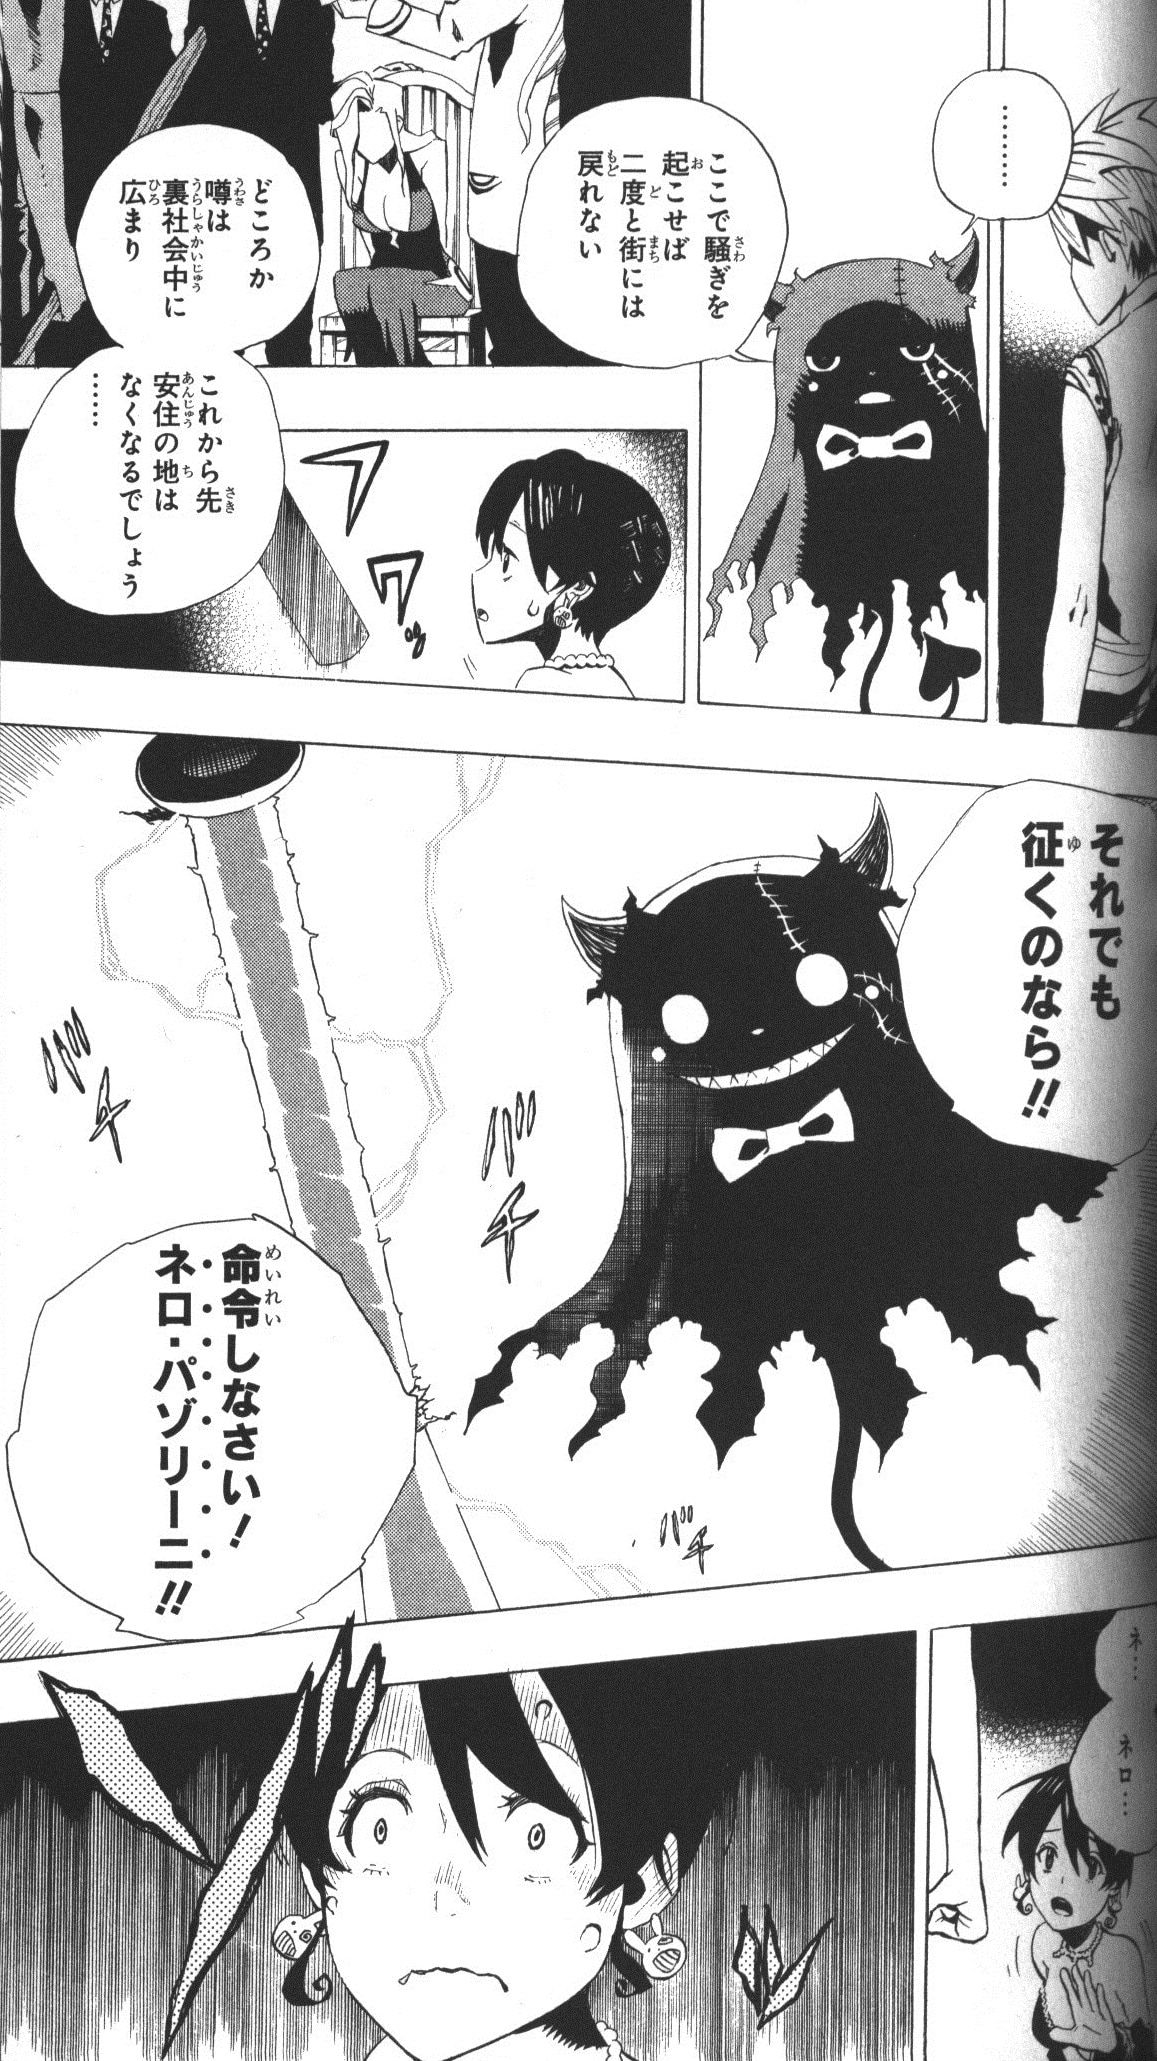 集英社 ジャンプコミックス 賀来ゆうじ Fantasma 1 まんだらけ Mandarake